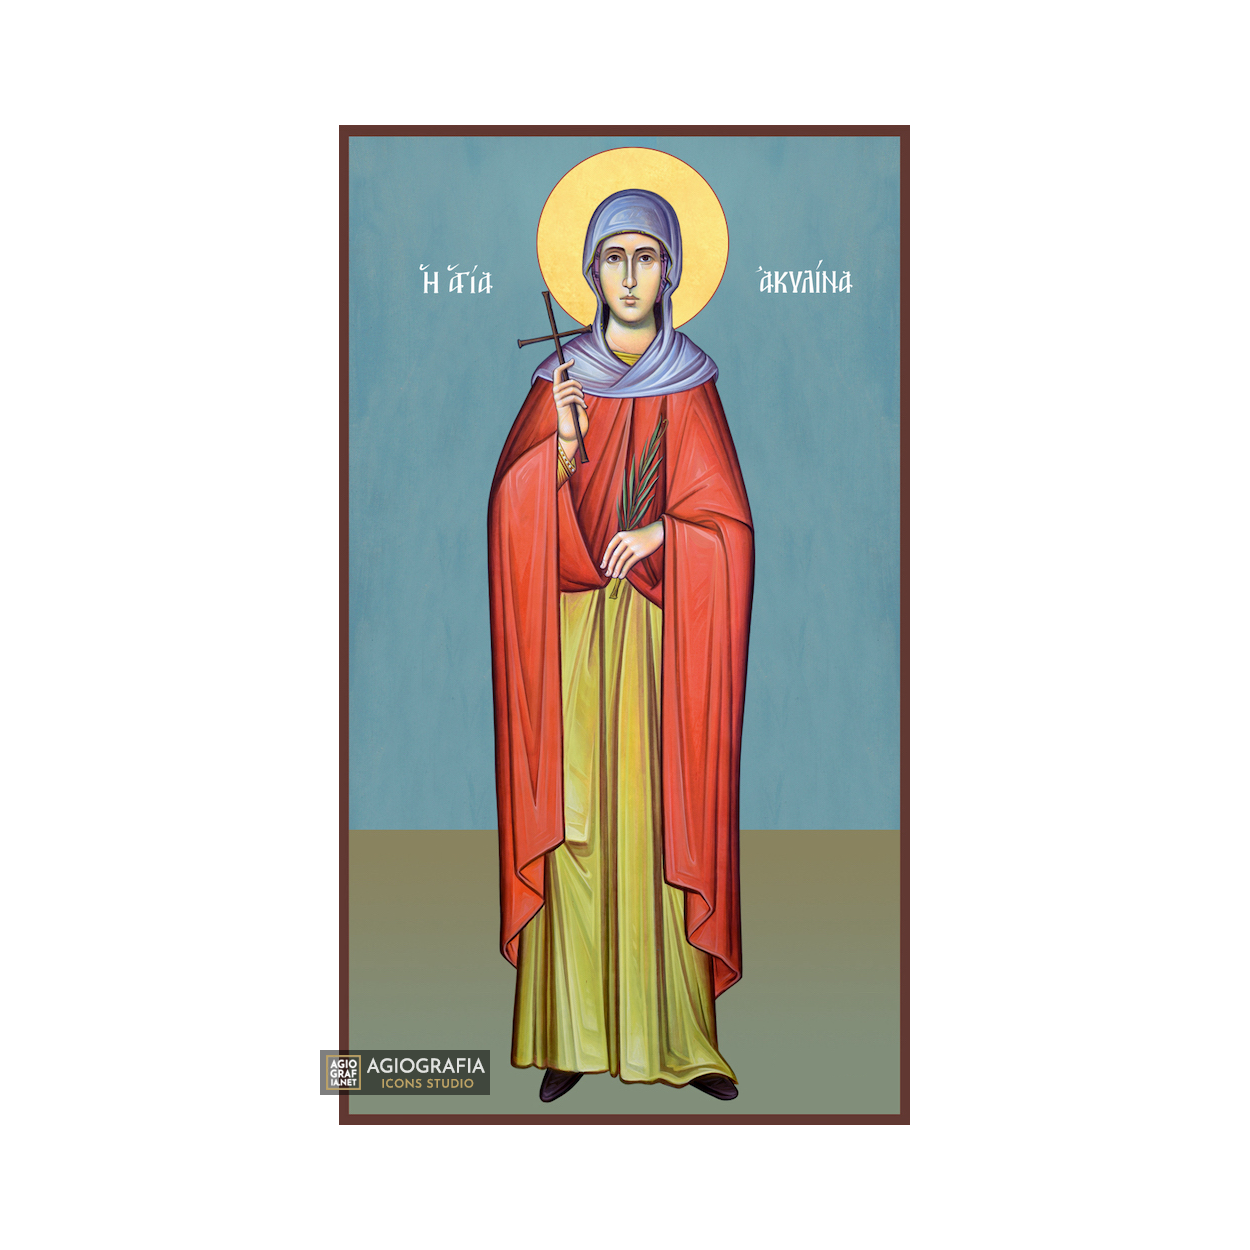 St Akilina Greek Orthodox Wood Icon with Blue Background